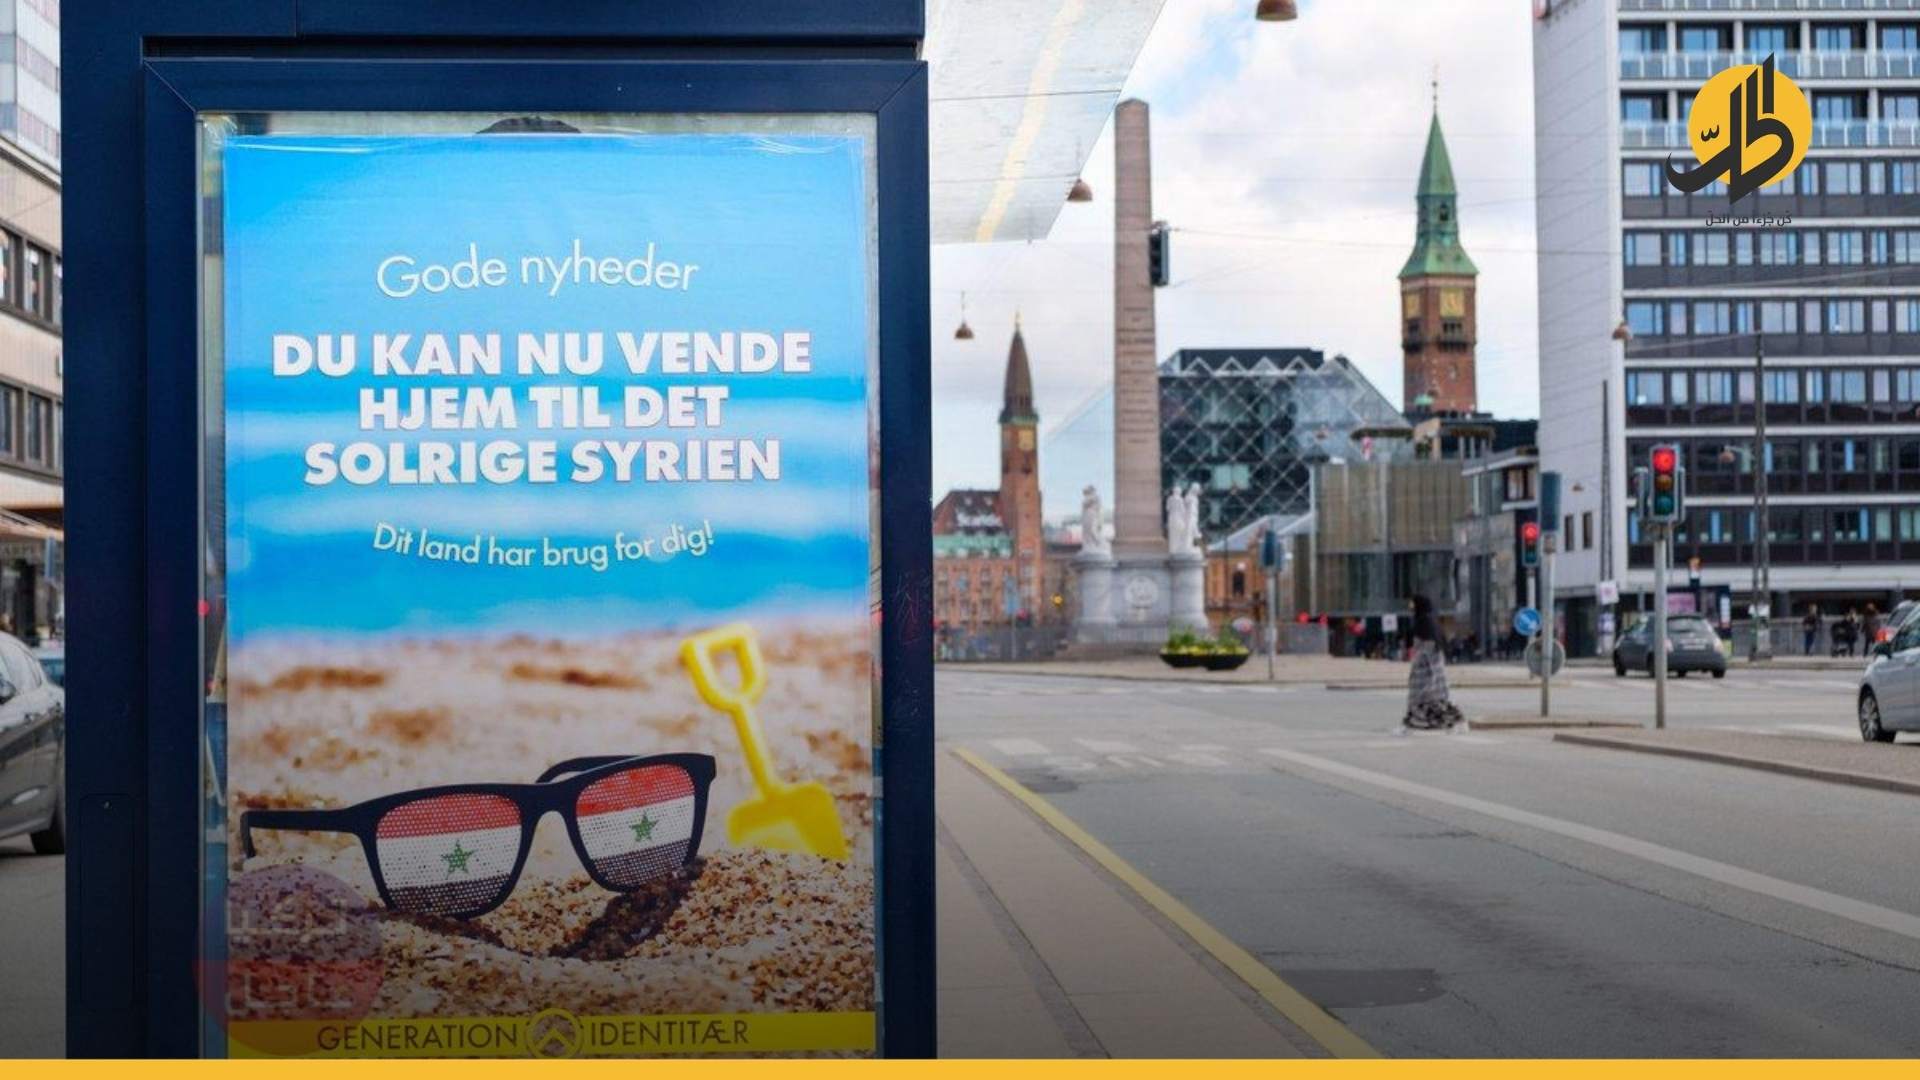 السوريون في الدنمارك مُهدّدون بمصيرٍ سيء والسلطات تستعد لترحيلهم إلى رواندا!